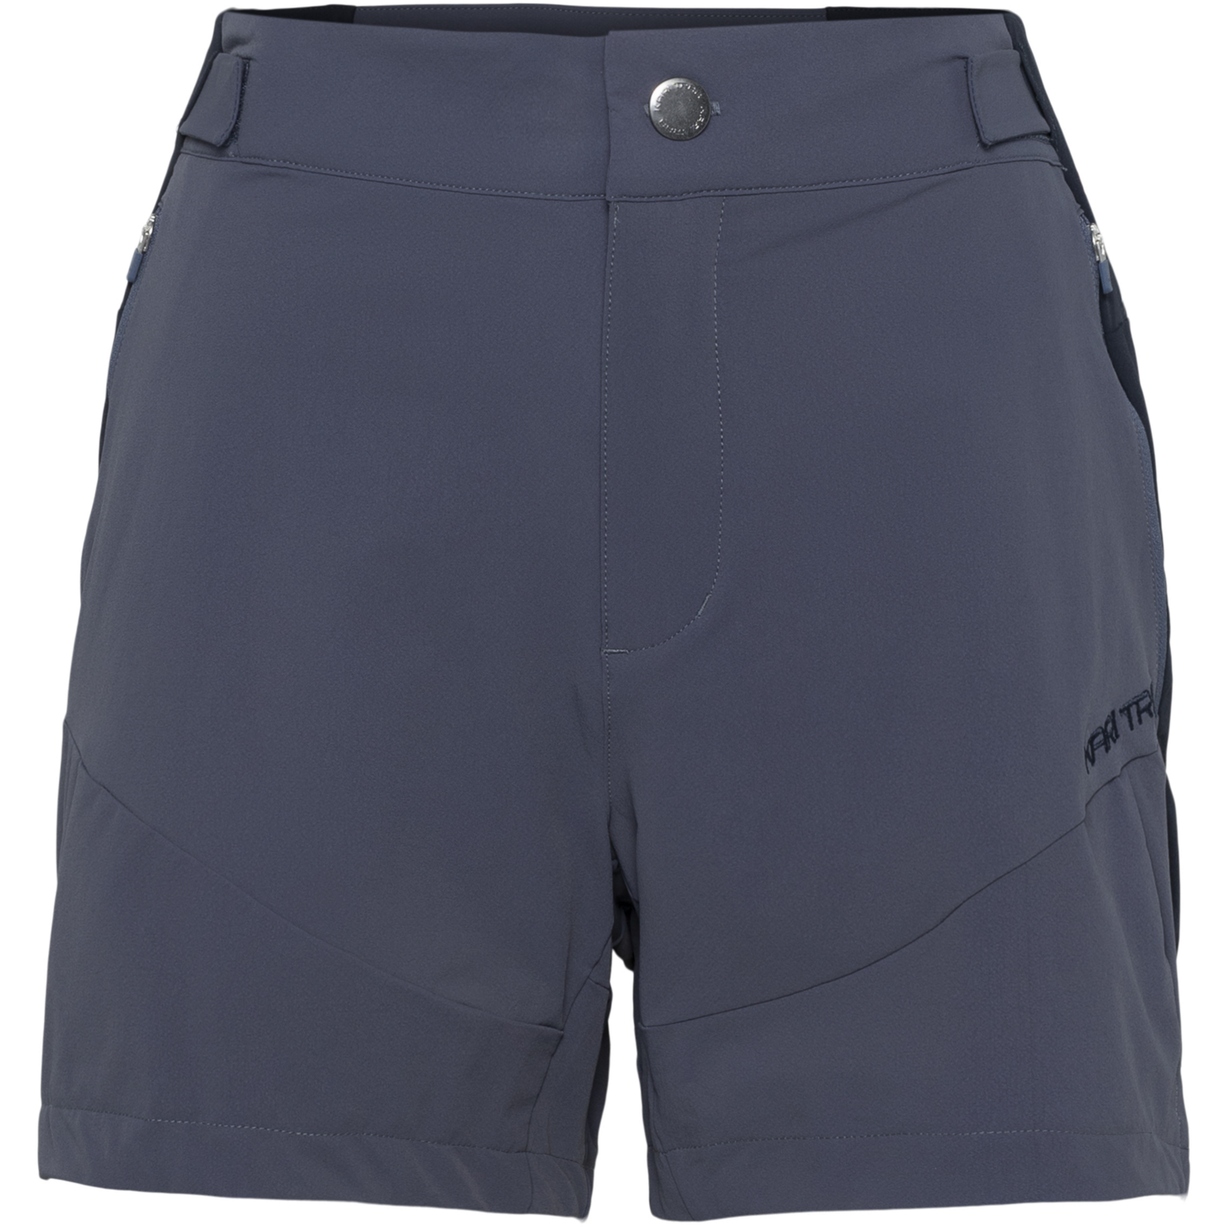 Produktbild von Kari Traa Henni 5 Inch Shorts Damen - dusty midtone blue